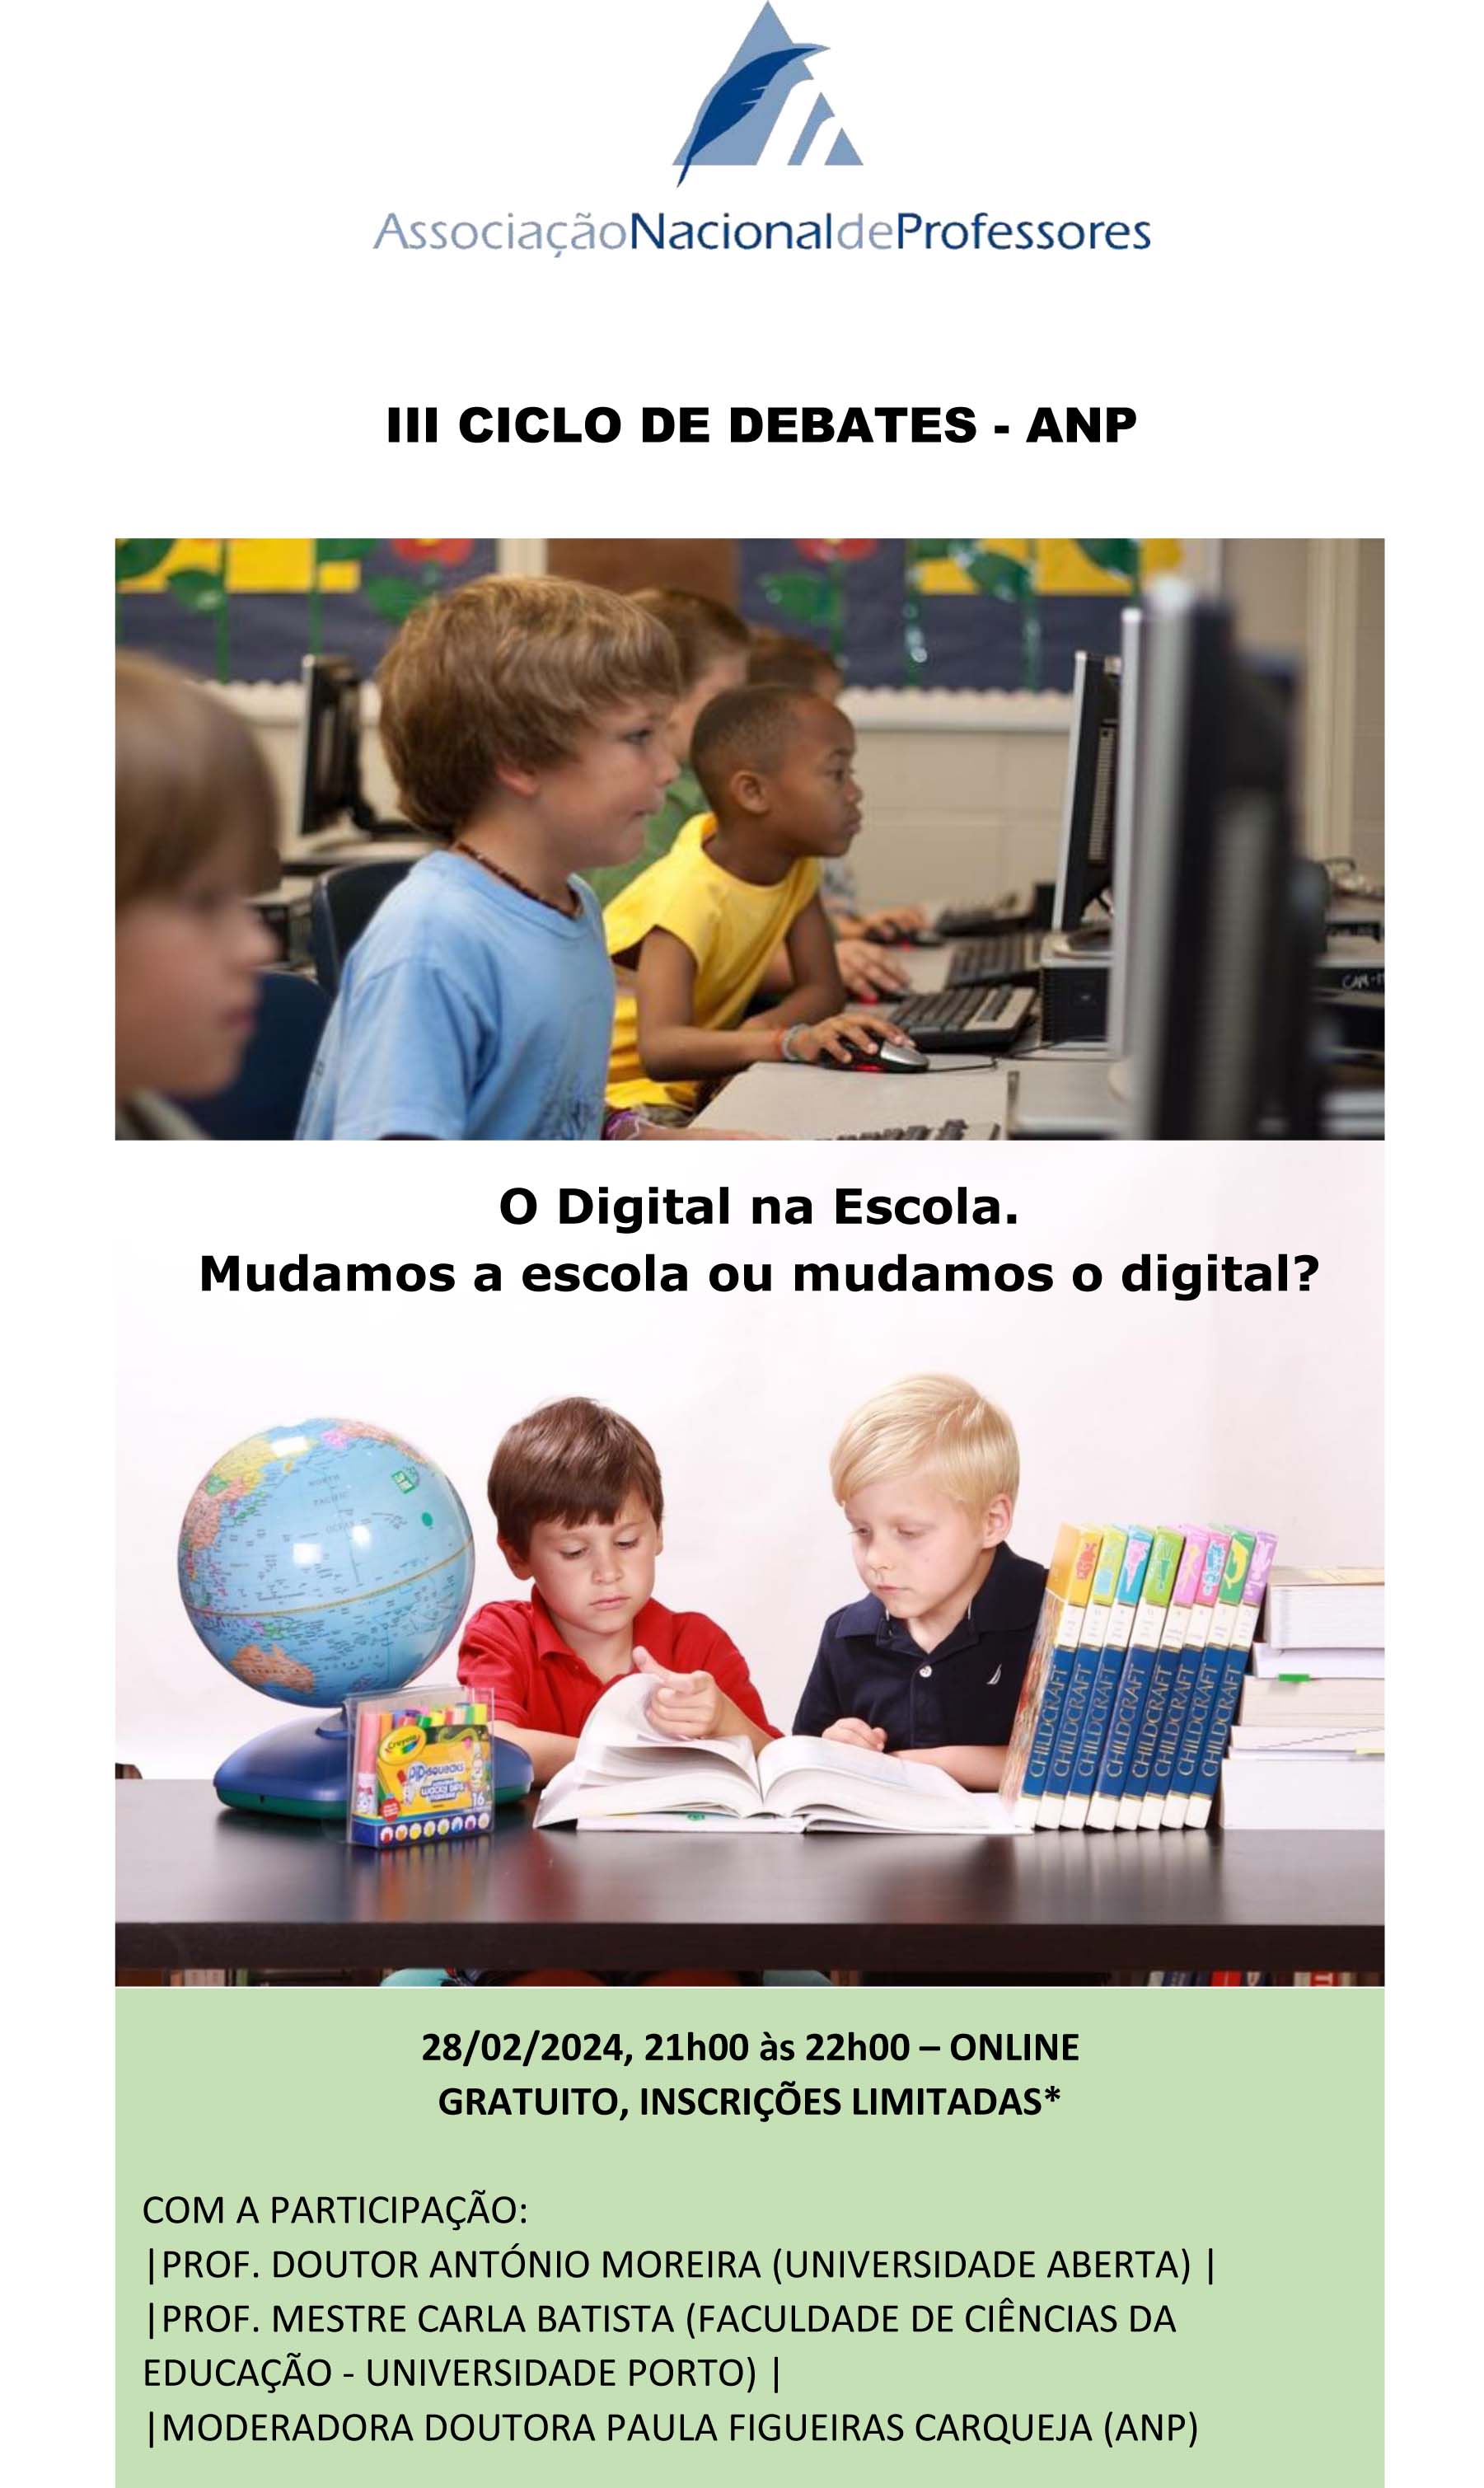 O Digital na Escola